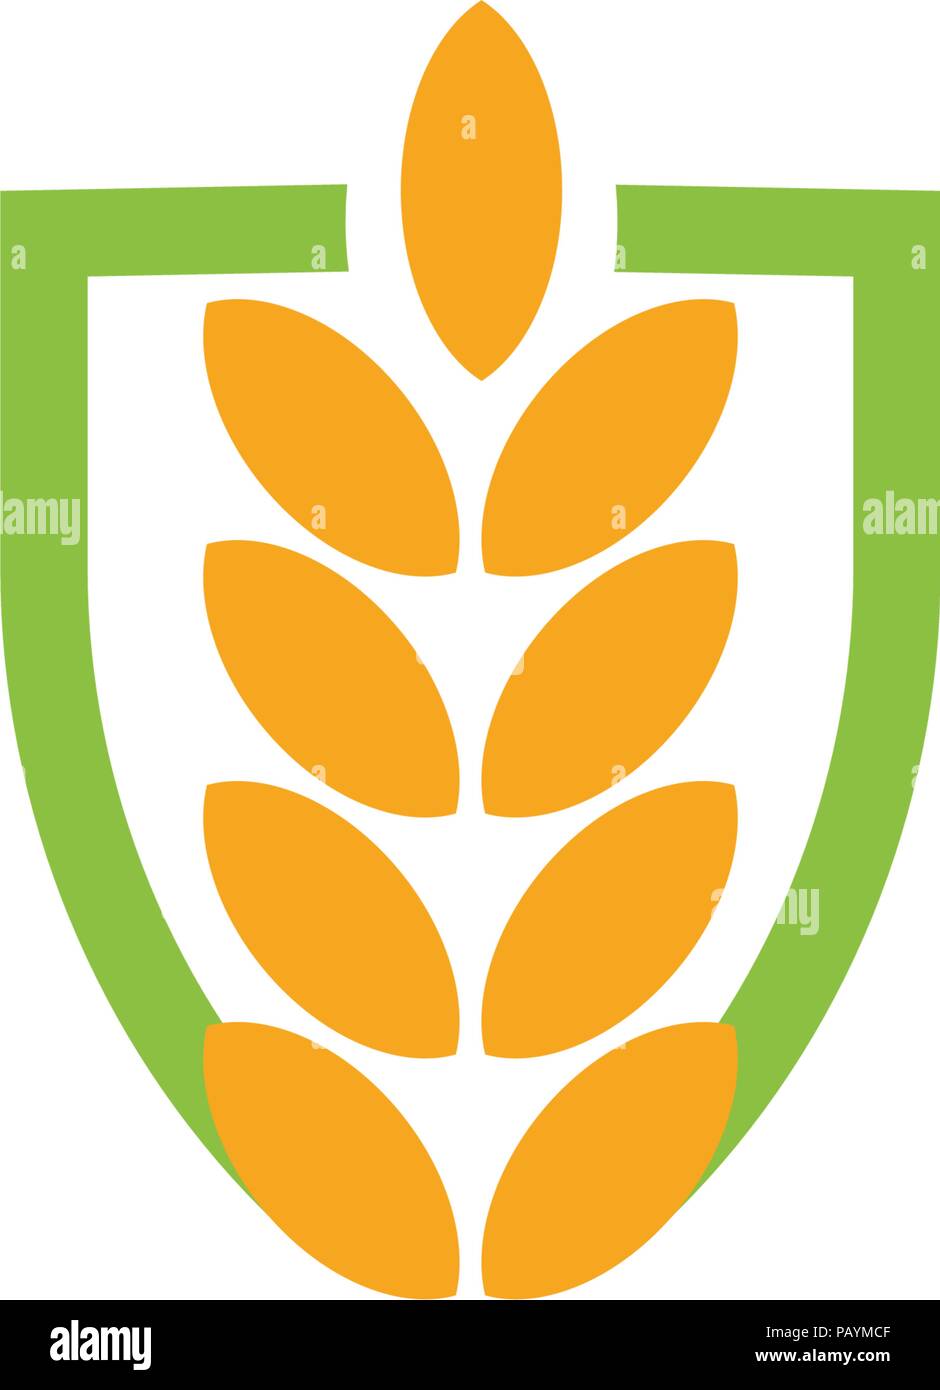 Grain de blé l'icône vecteur résumé isolés couleur orange oreille hearldic blé logo. Logotype de l'élément de la nature. Produit biologique agricole signe. Illustration vecteur de récolte Illustration de Vecteur